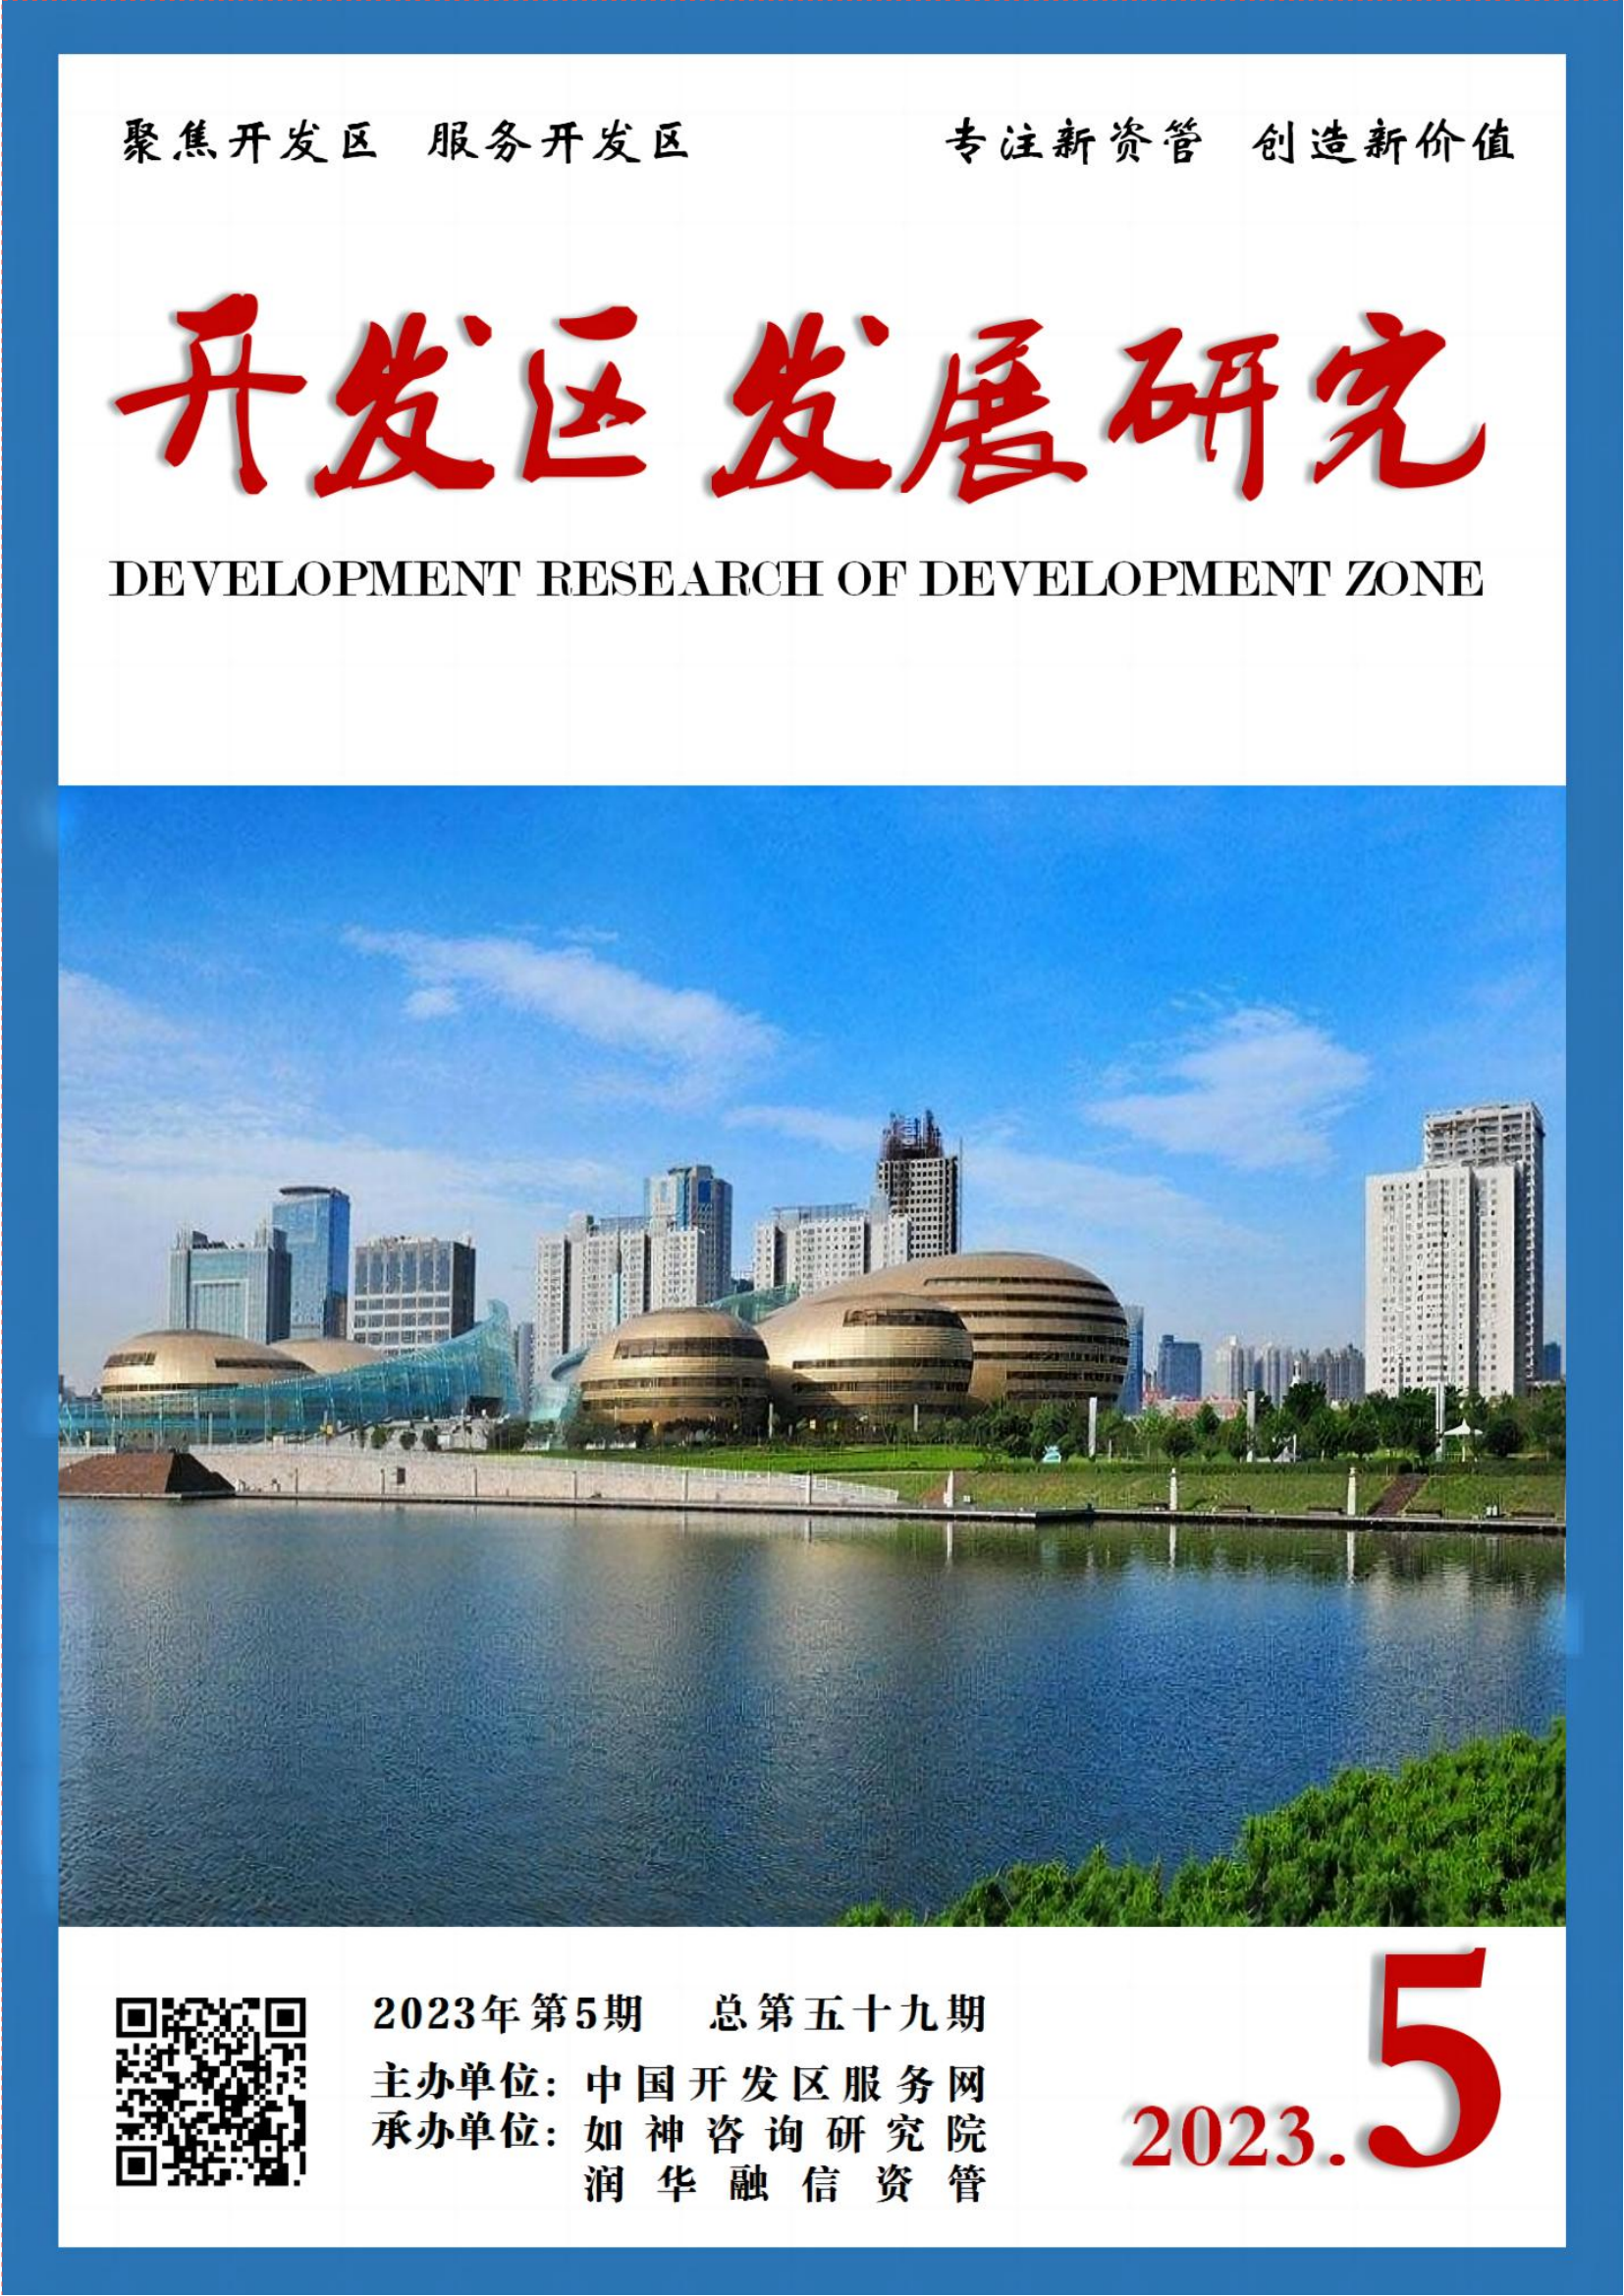 封面封底《开发区发展研究》2023-5文f稿_00.png